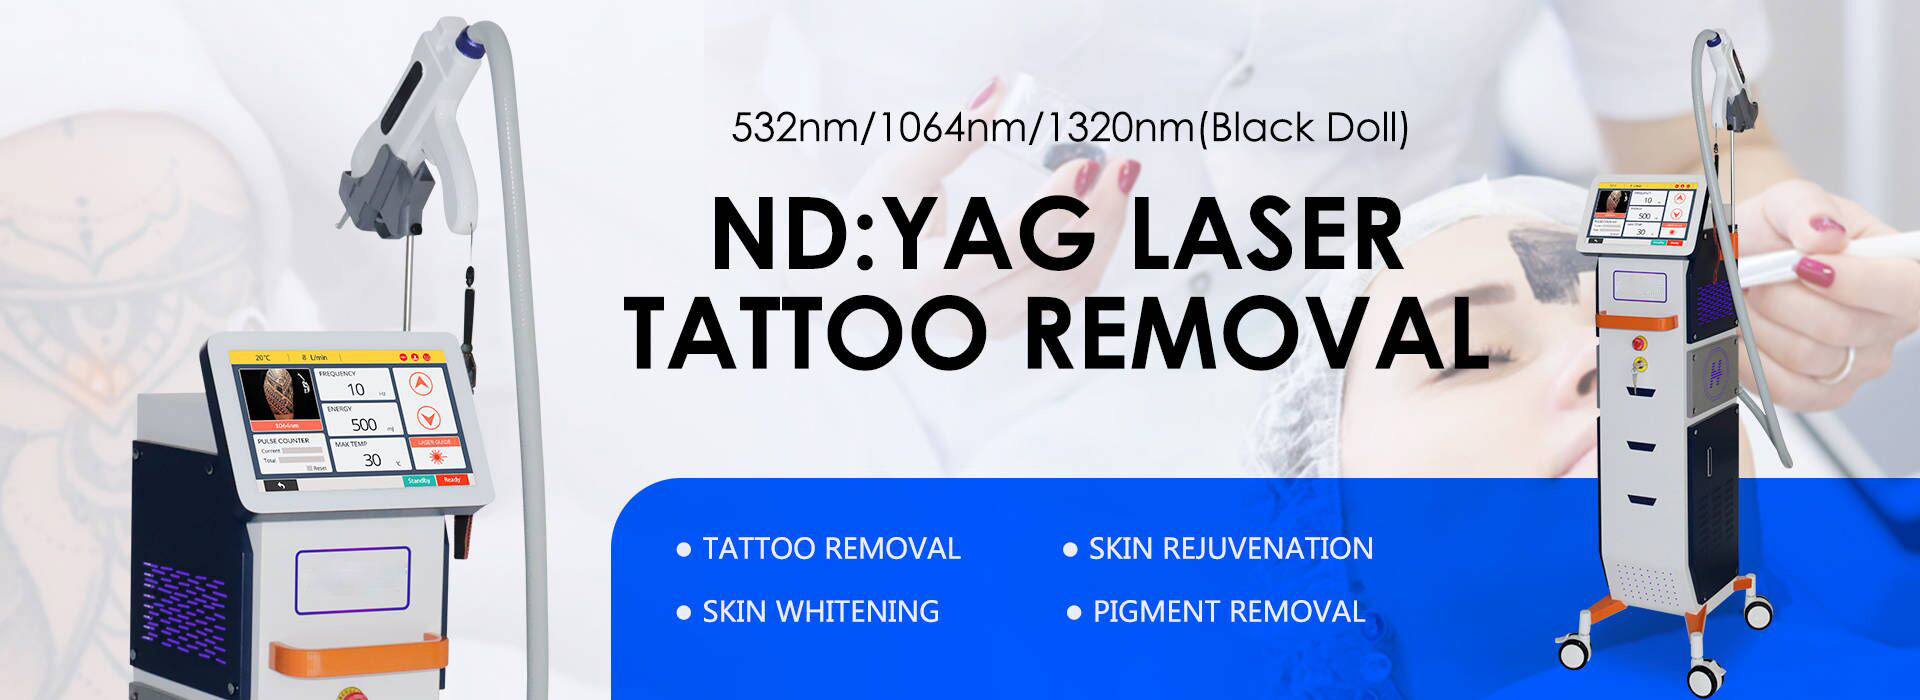 nd yag laser